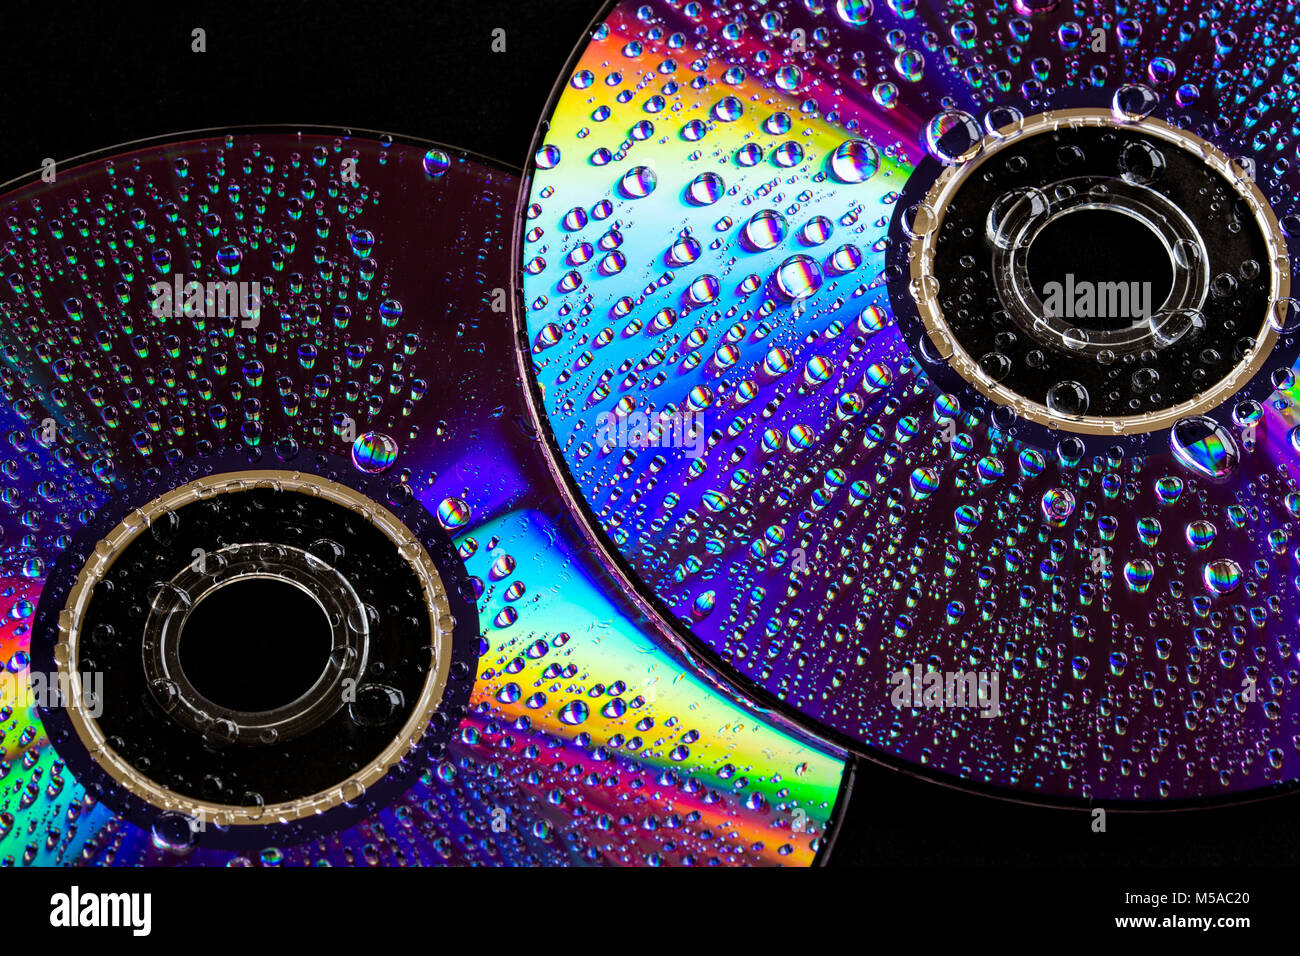 Ein paar CD's für einige "leichte" Musik. Wassertropfen und buntes Licht Spektrum auf dem glänzenden Oberflächen der Scheiben reflektiert Stockfoto